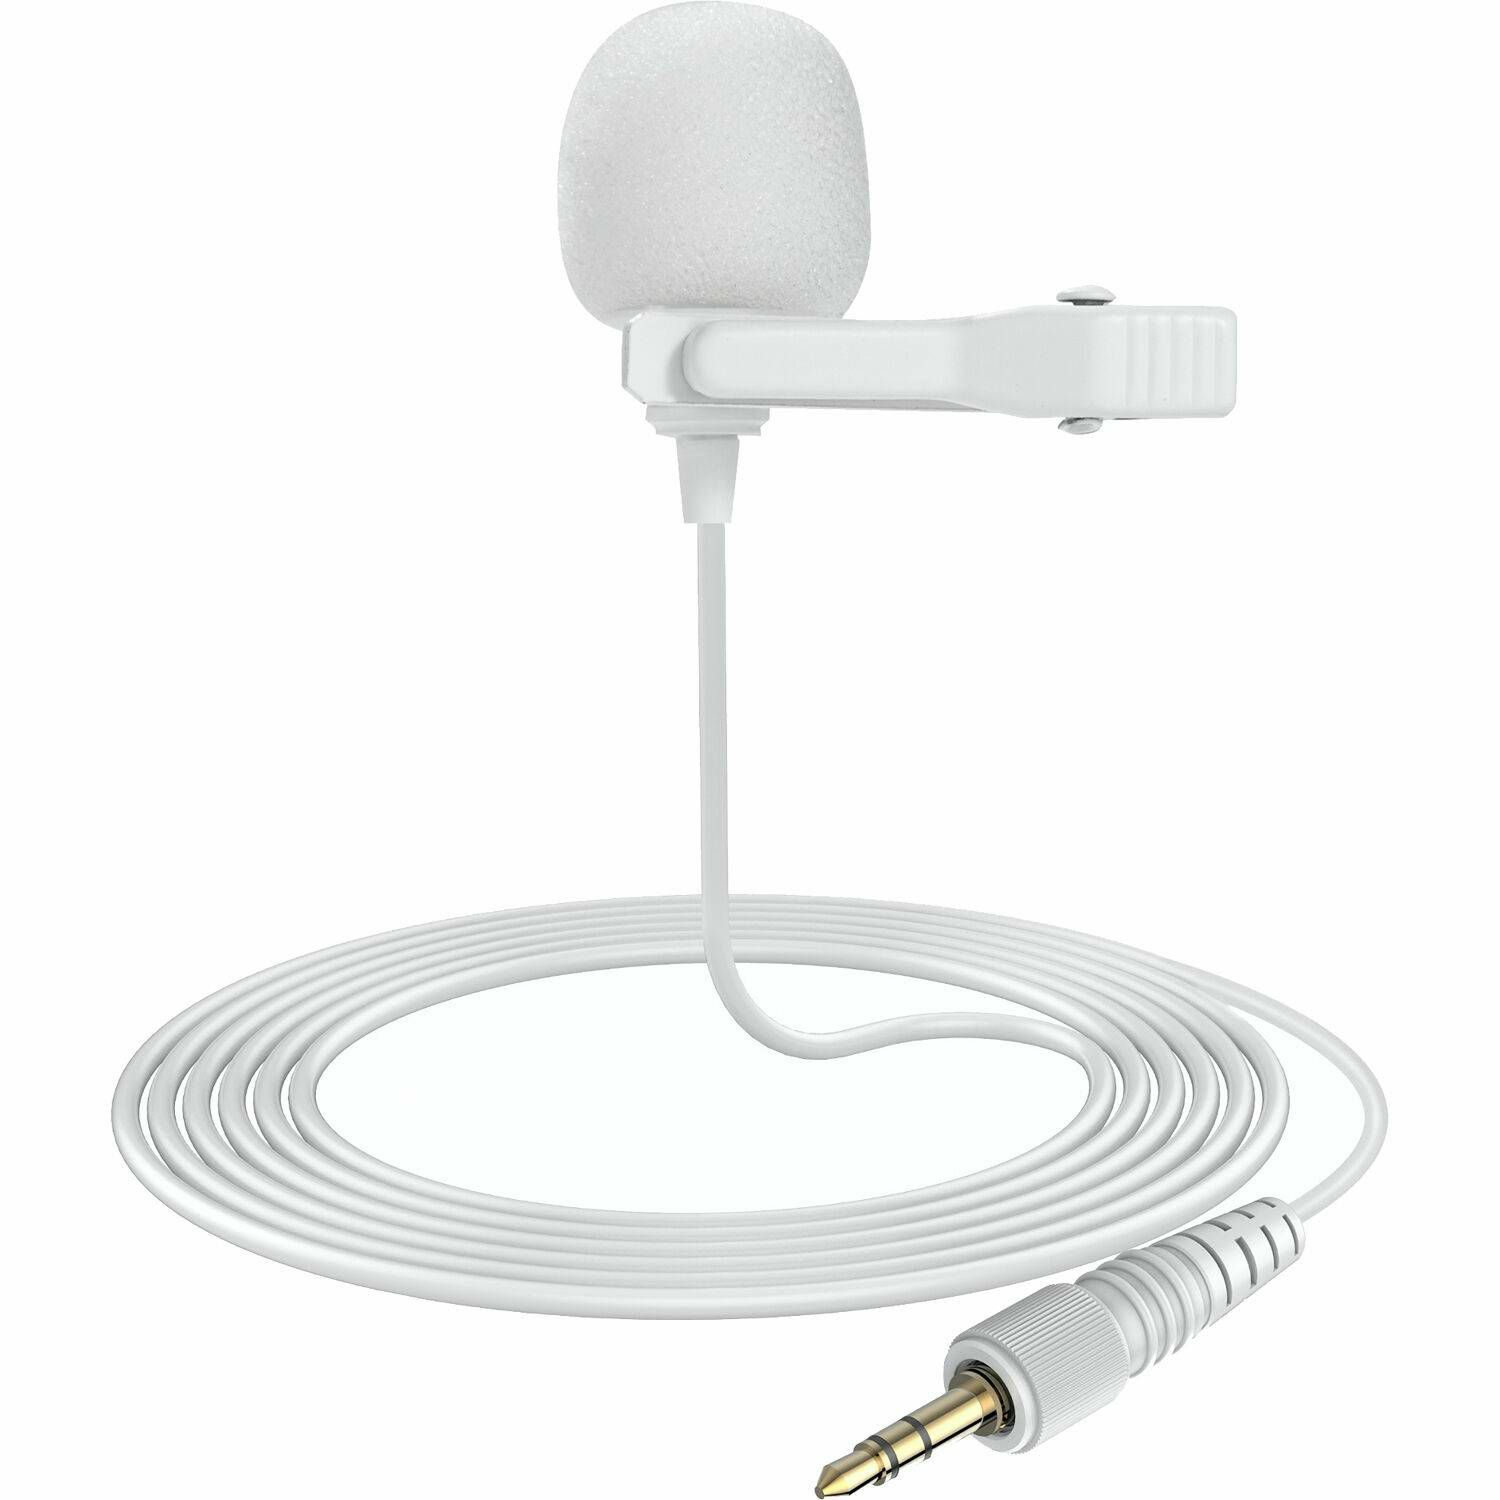 Saramonic Blink500 B2W 2.4G Dual Channel Wireless Microphone Kit (TXW + TXW + RXW) Snow White bijeli bežični mikrofon